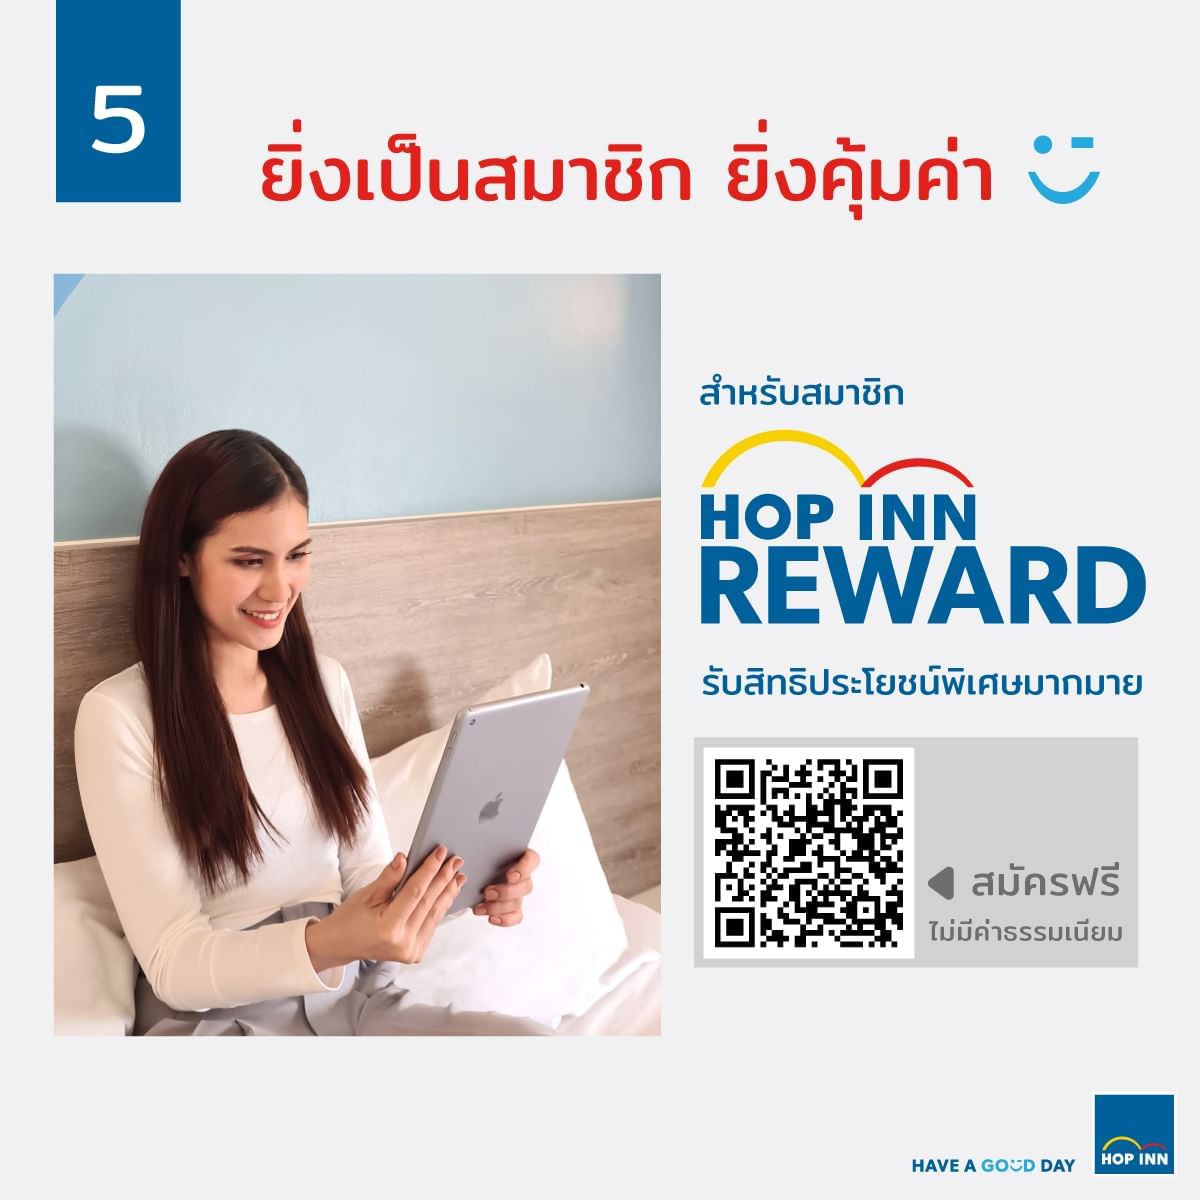 สิทธิประโยชน์สมัครสมาชิก HOP INN REWARD - โรงแรมฮ็อป อินน์ ประเทศไทย